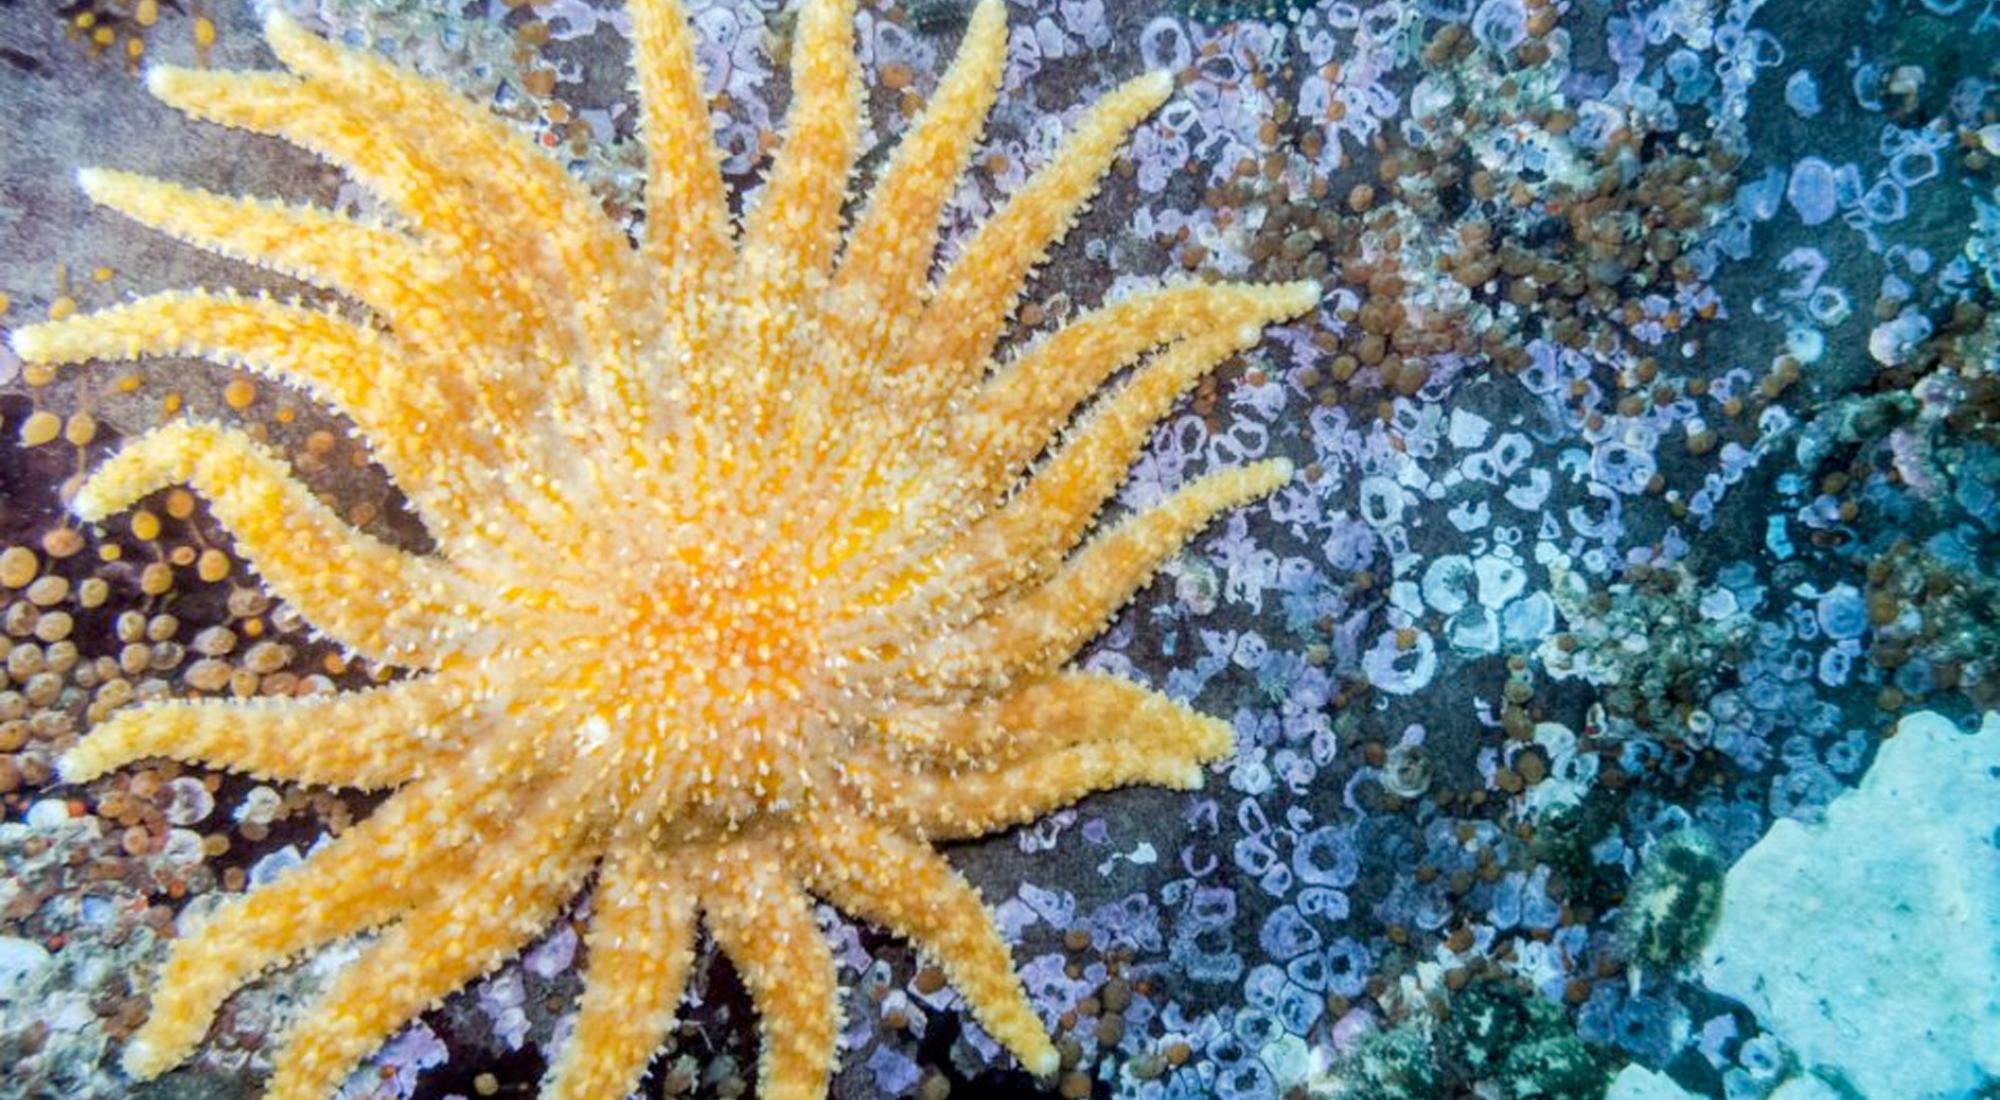 Sunflower Sea Star, Online Learning Center